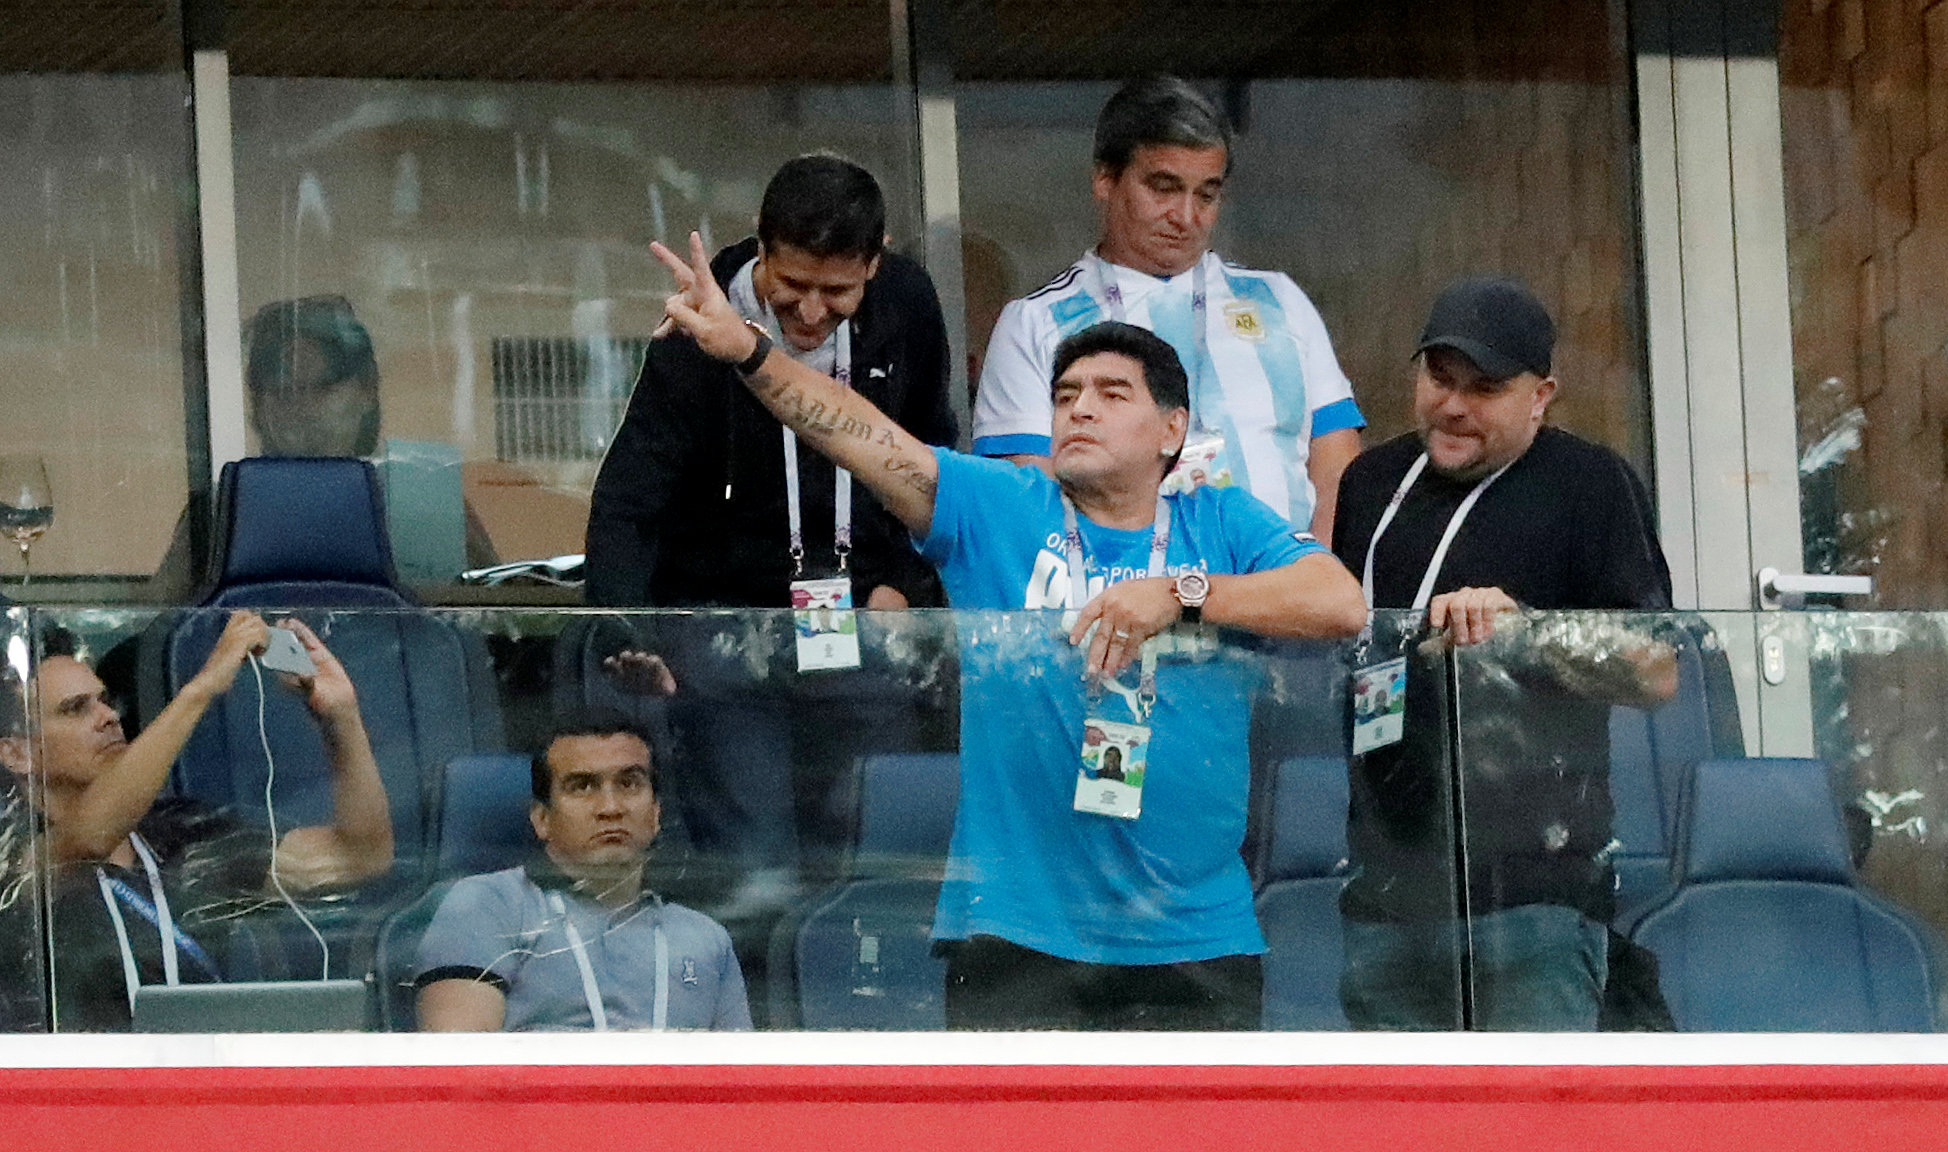 Maradona es único, pero él también debe mostrar respeto en los estadios, dice la FIFA